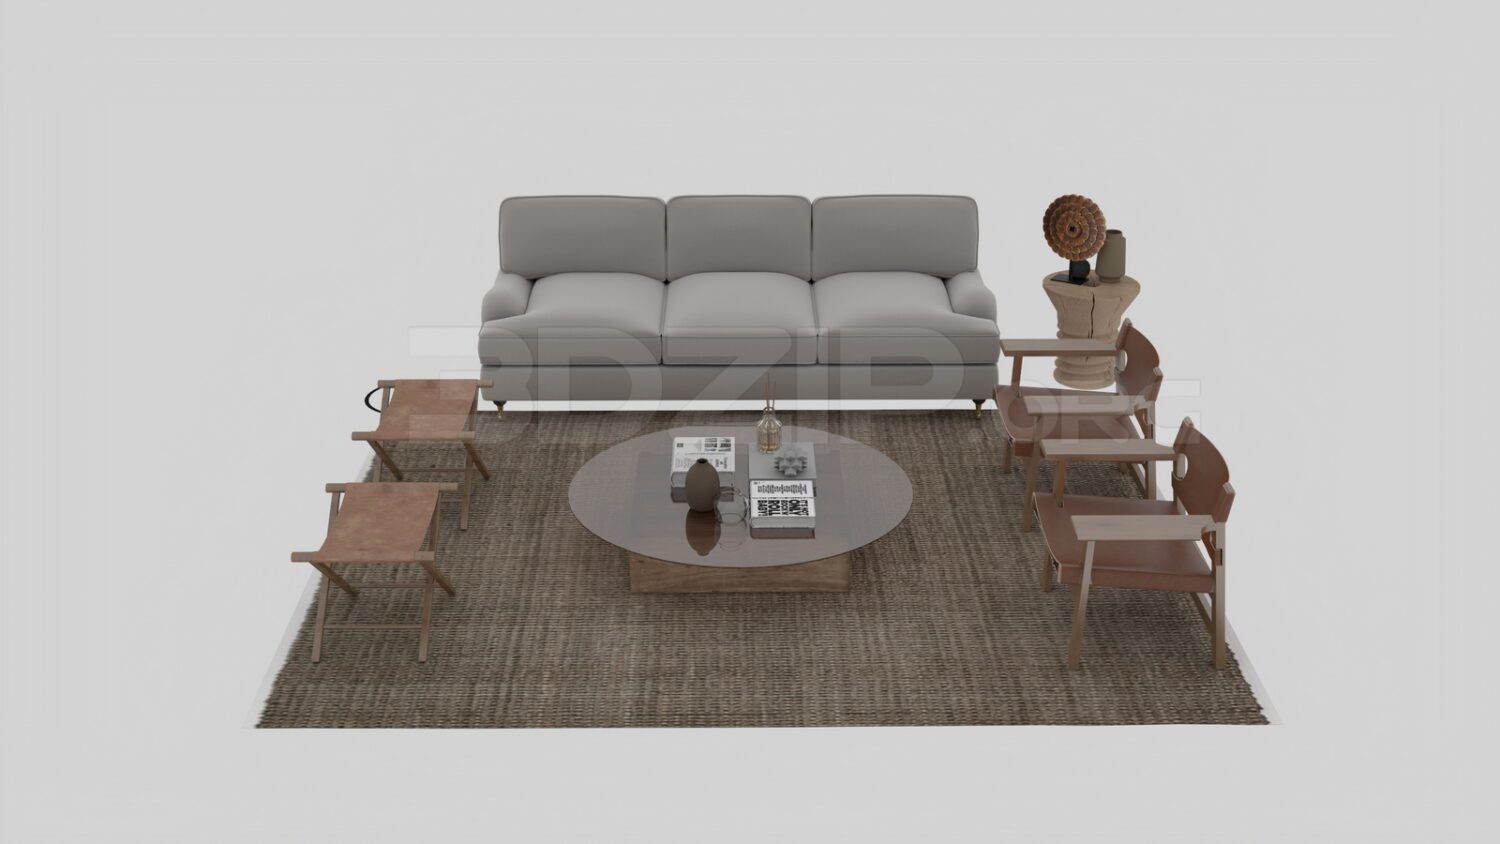 3418. Free 3D Sofa Model Download